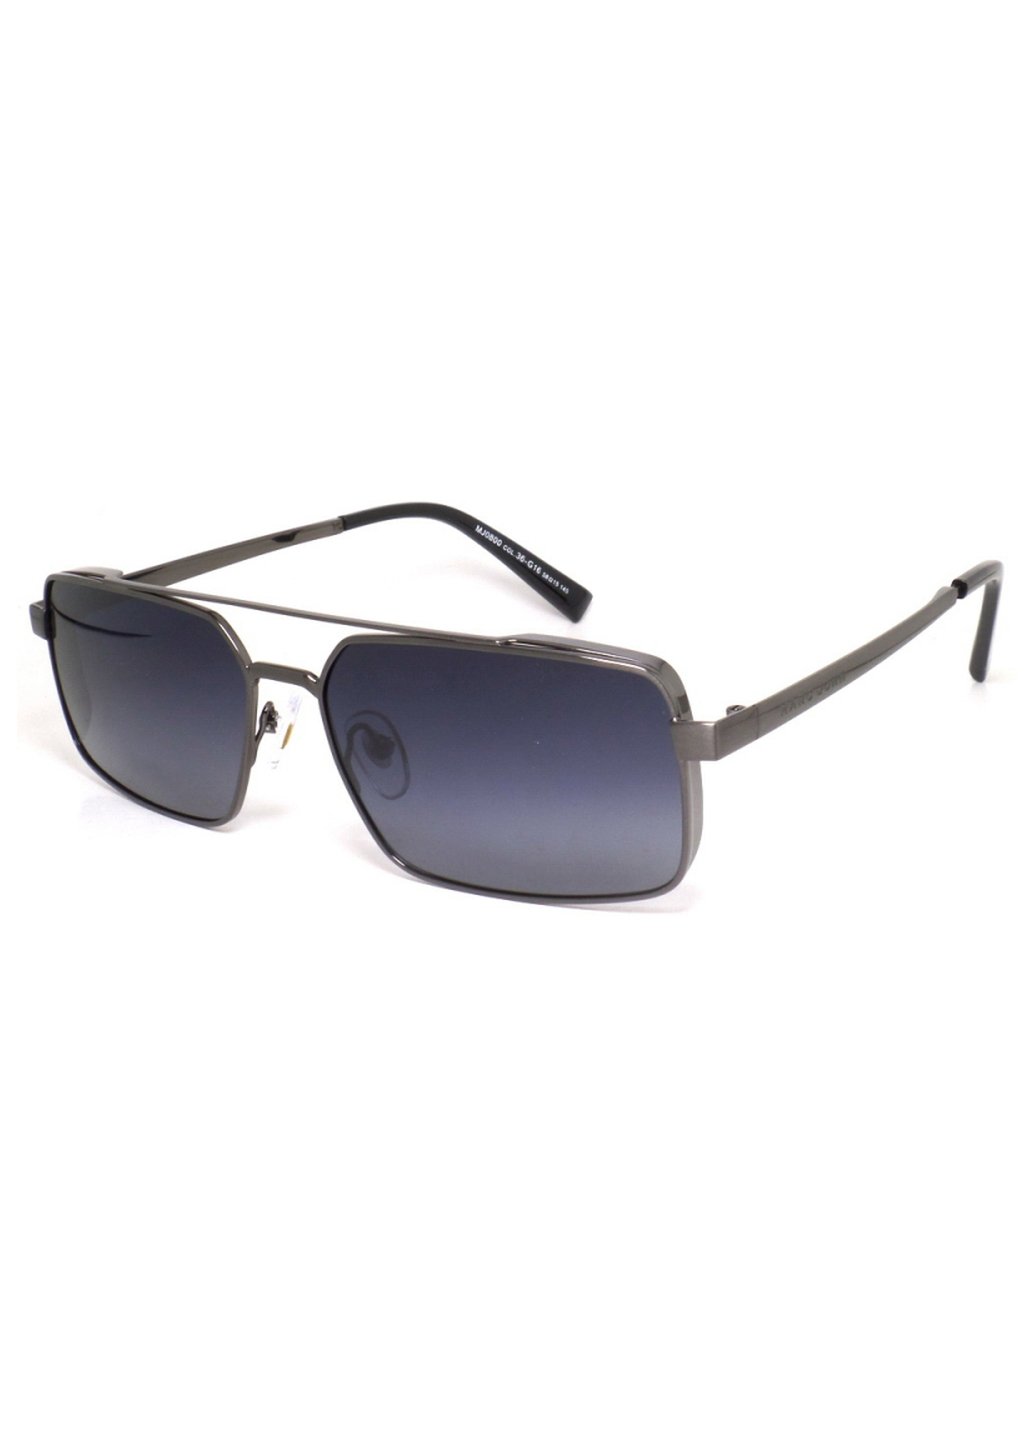 Купить Мужские солнцезащитные очки Marc John с поляризацией MJ0800 190007 - Синий в интернет-магазине